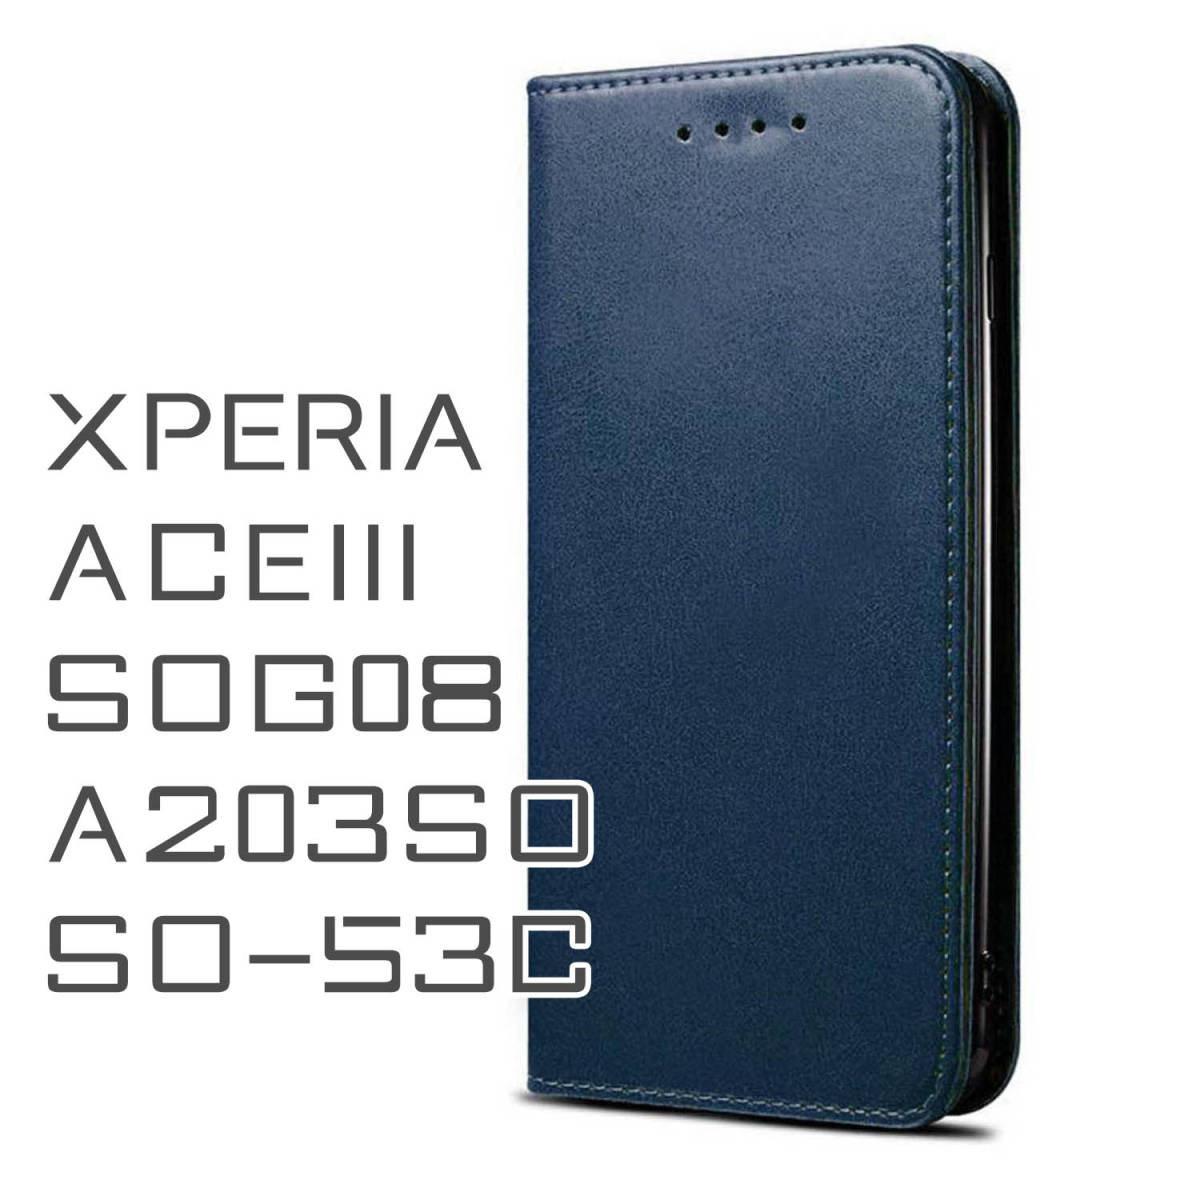 Xperia ACEIII ケース 手帳型 お洒落 紺色 ネイビー 青 SOG08 SO53C ACE3 カバー A203SO シンプル 革 レザー スマホケース 送料無料 安い_画像1